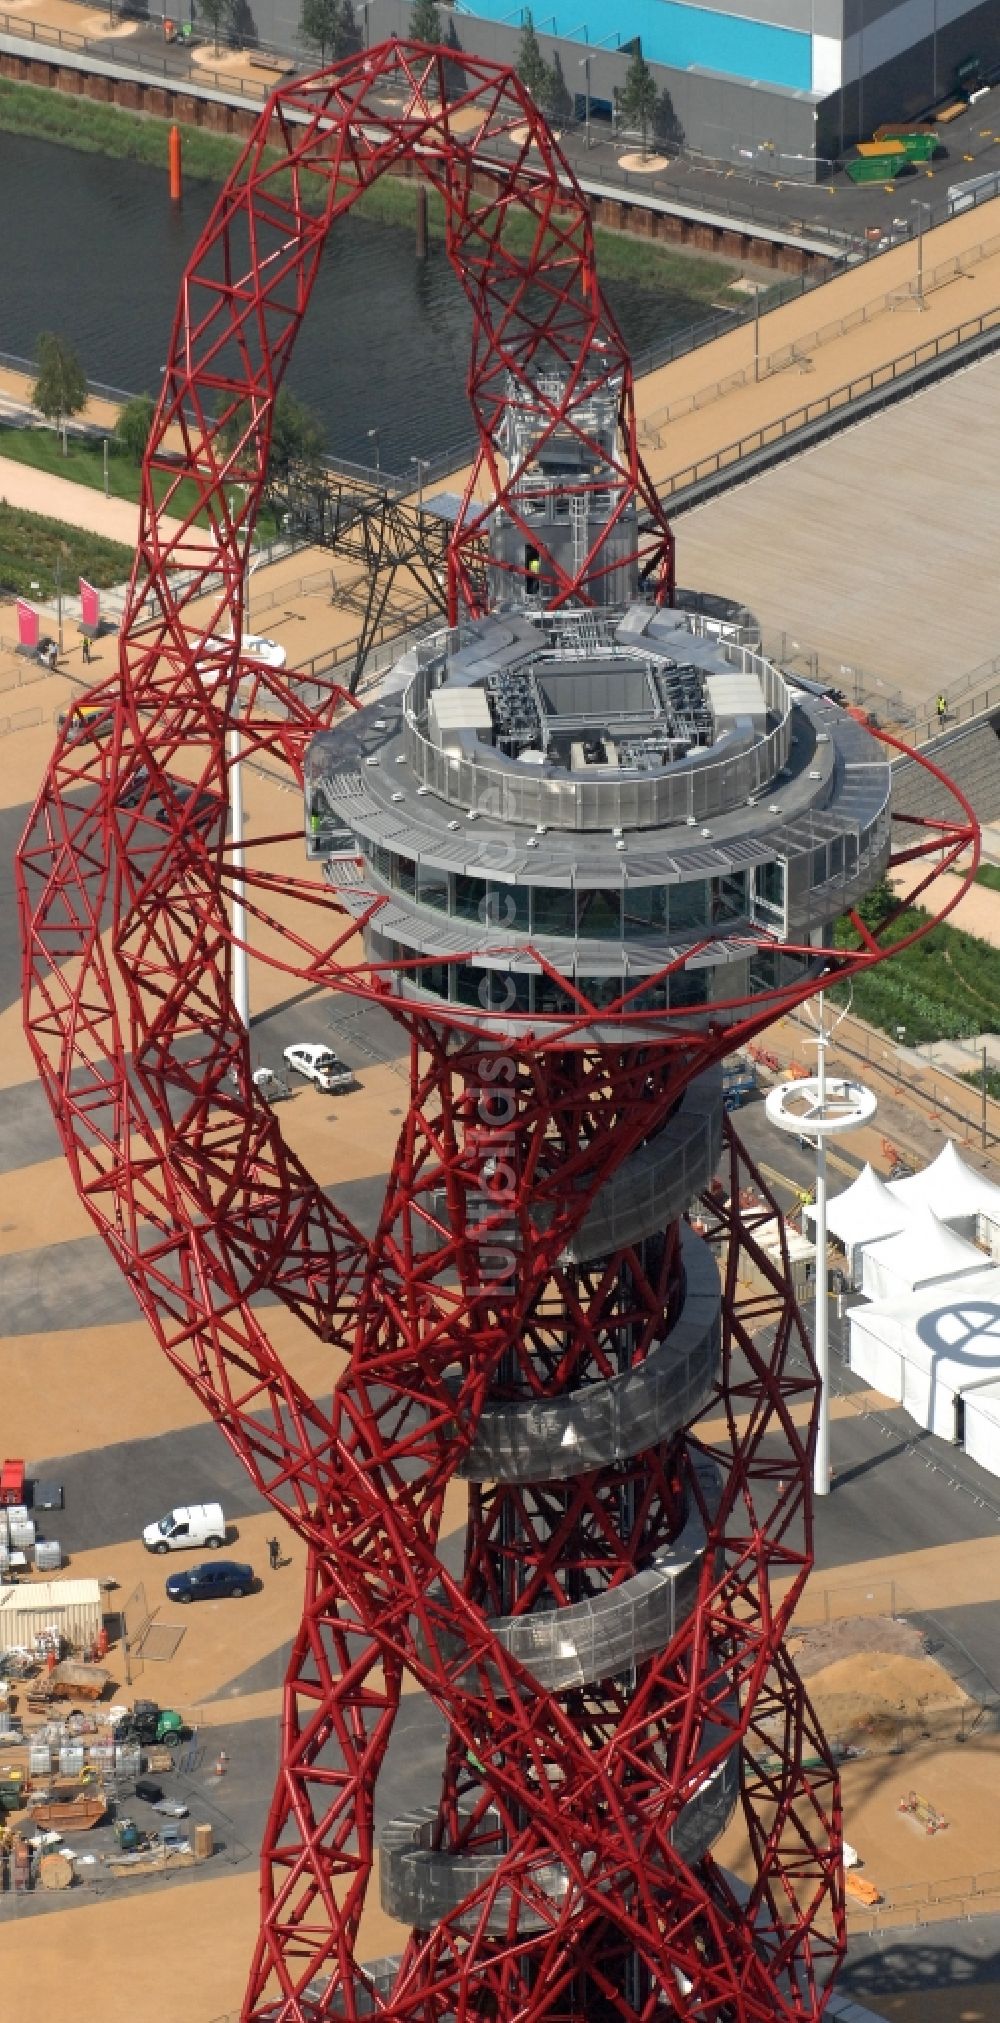 London von oben - London Olympia 2012 - Aussichtsturm ArcelorMittal Orbit